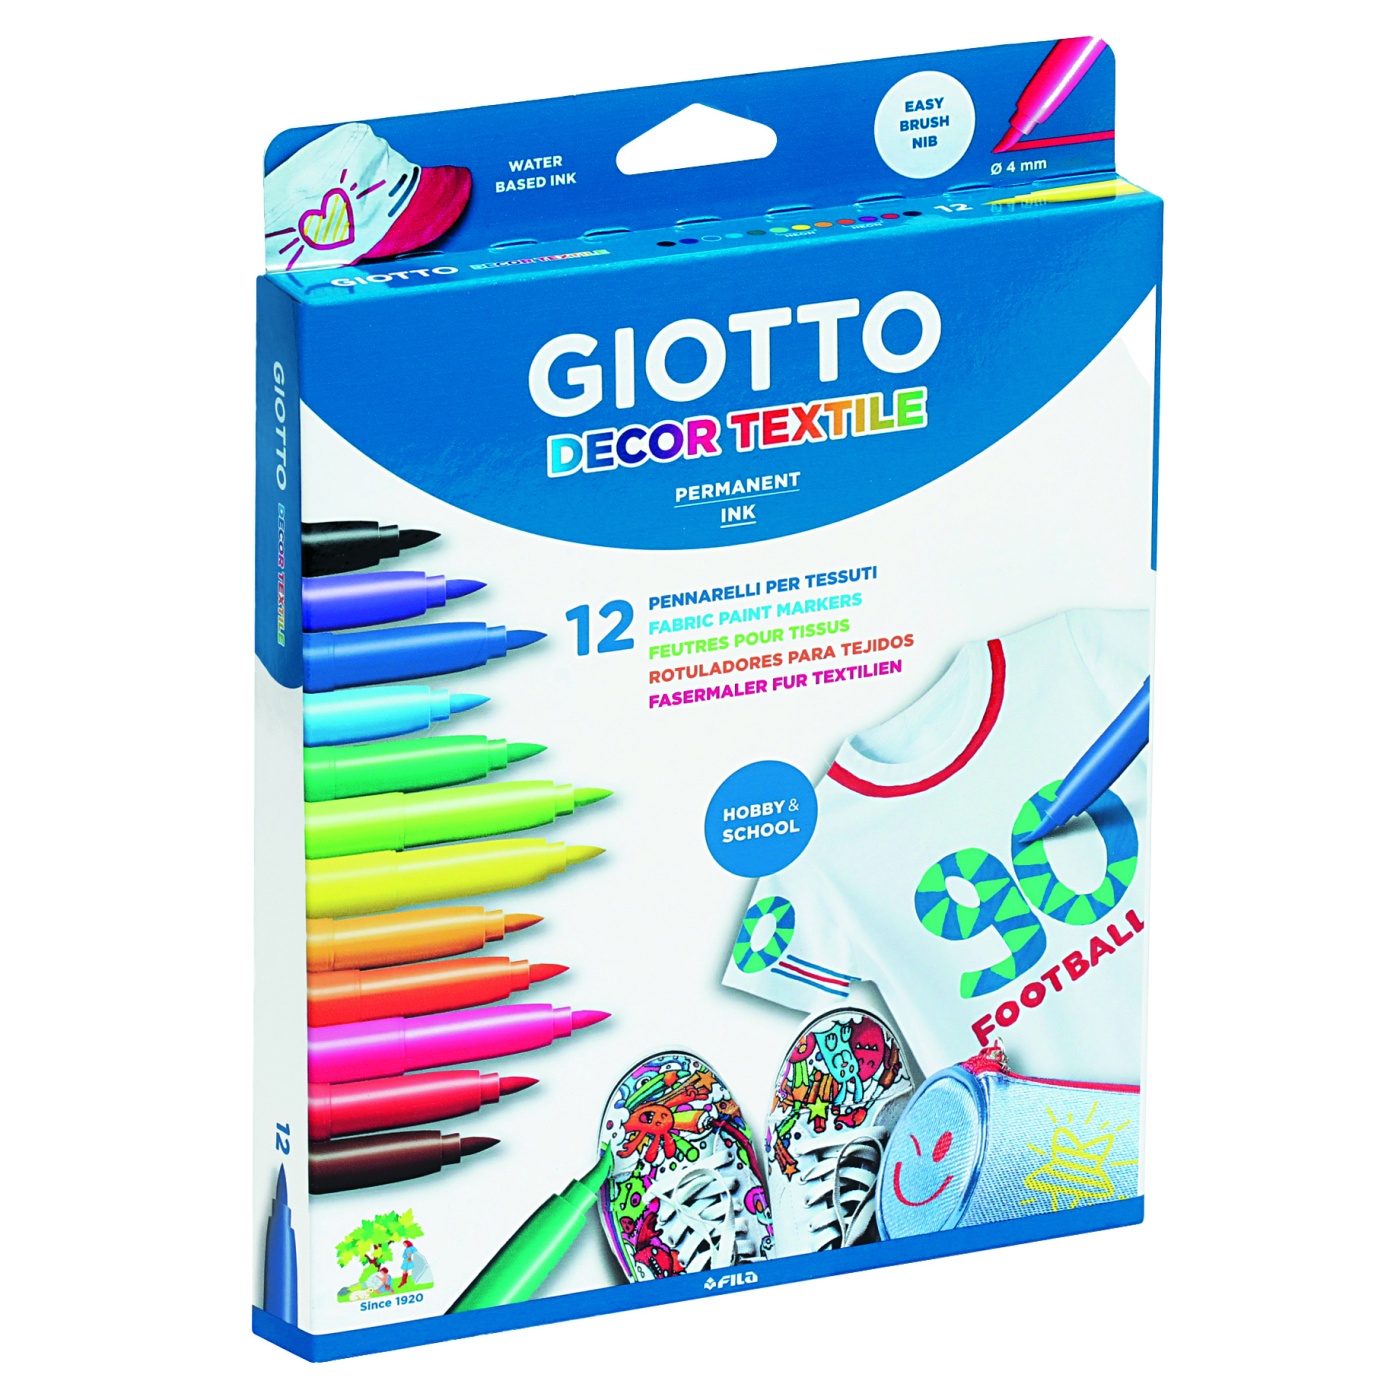 Giotto Fabric Marker Decor | Store